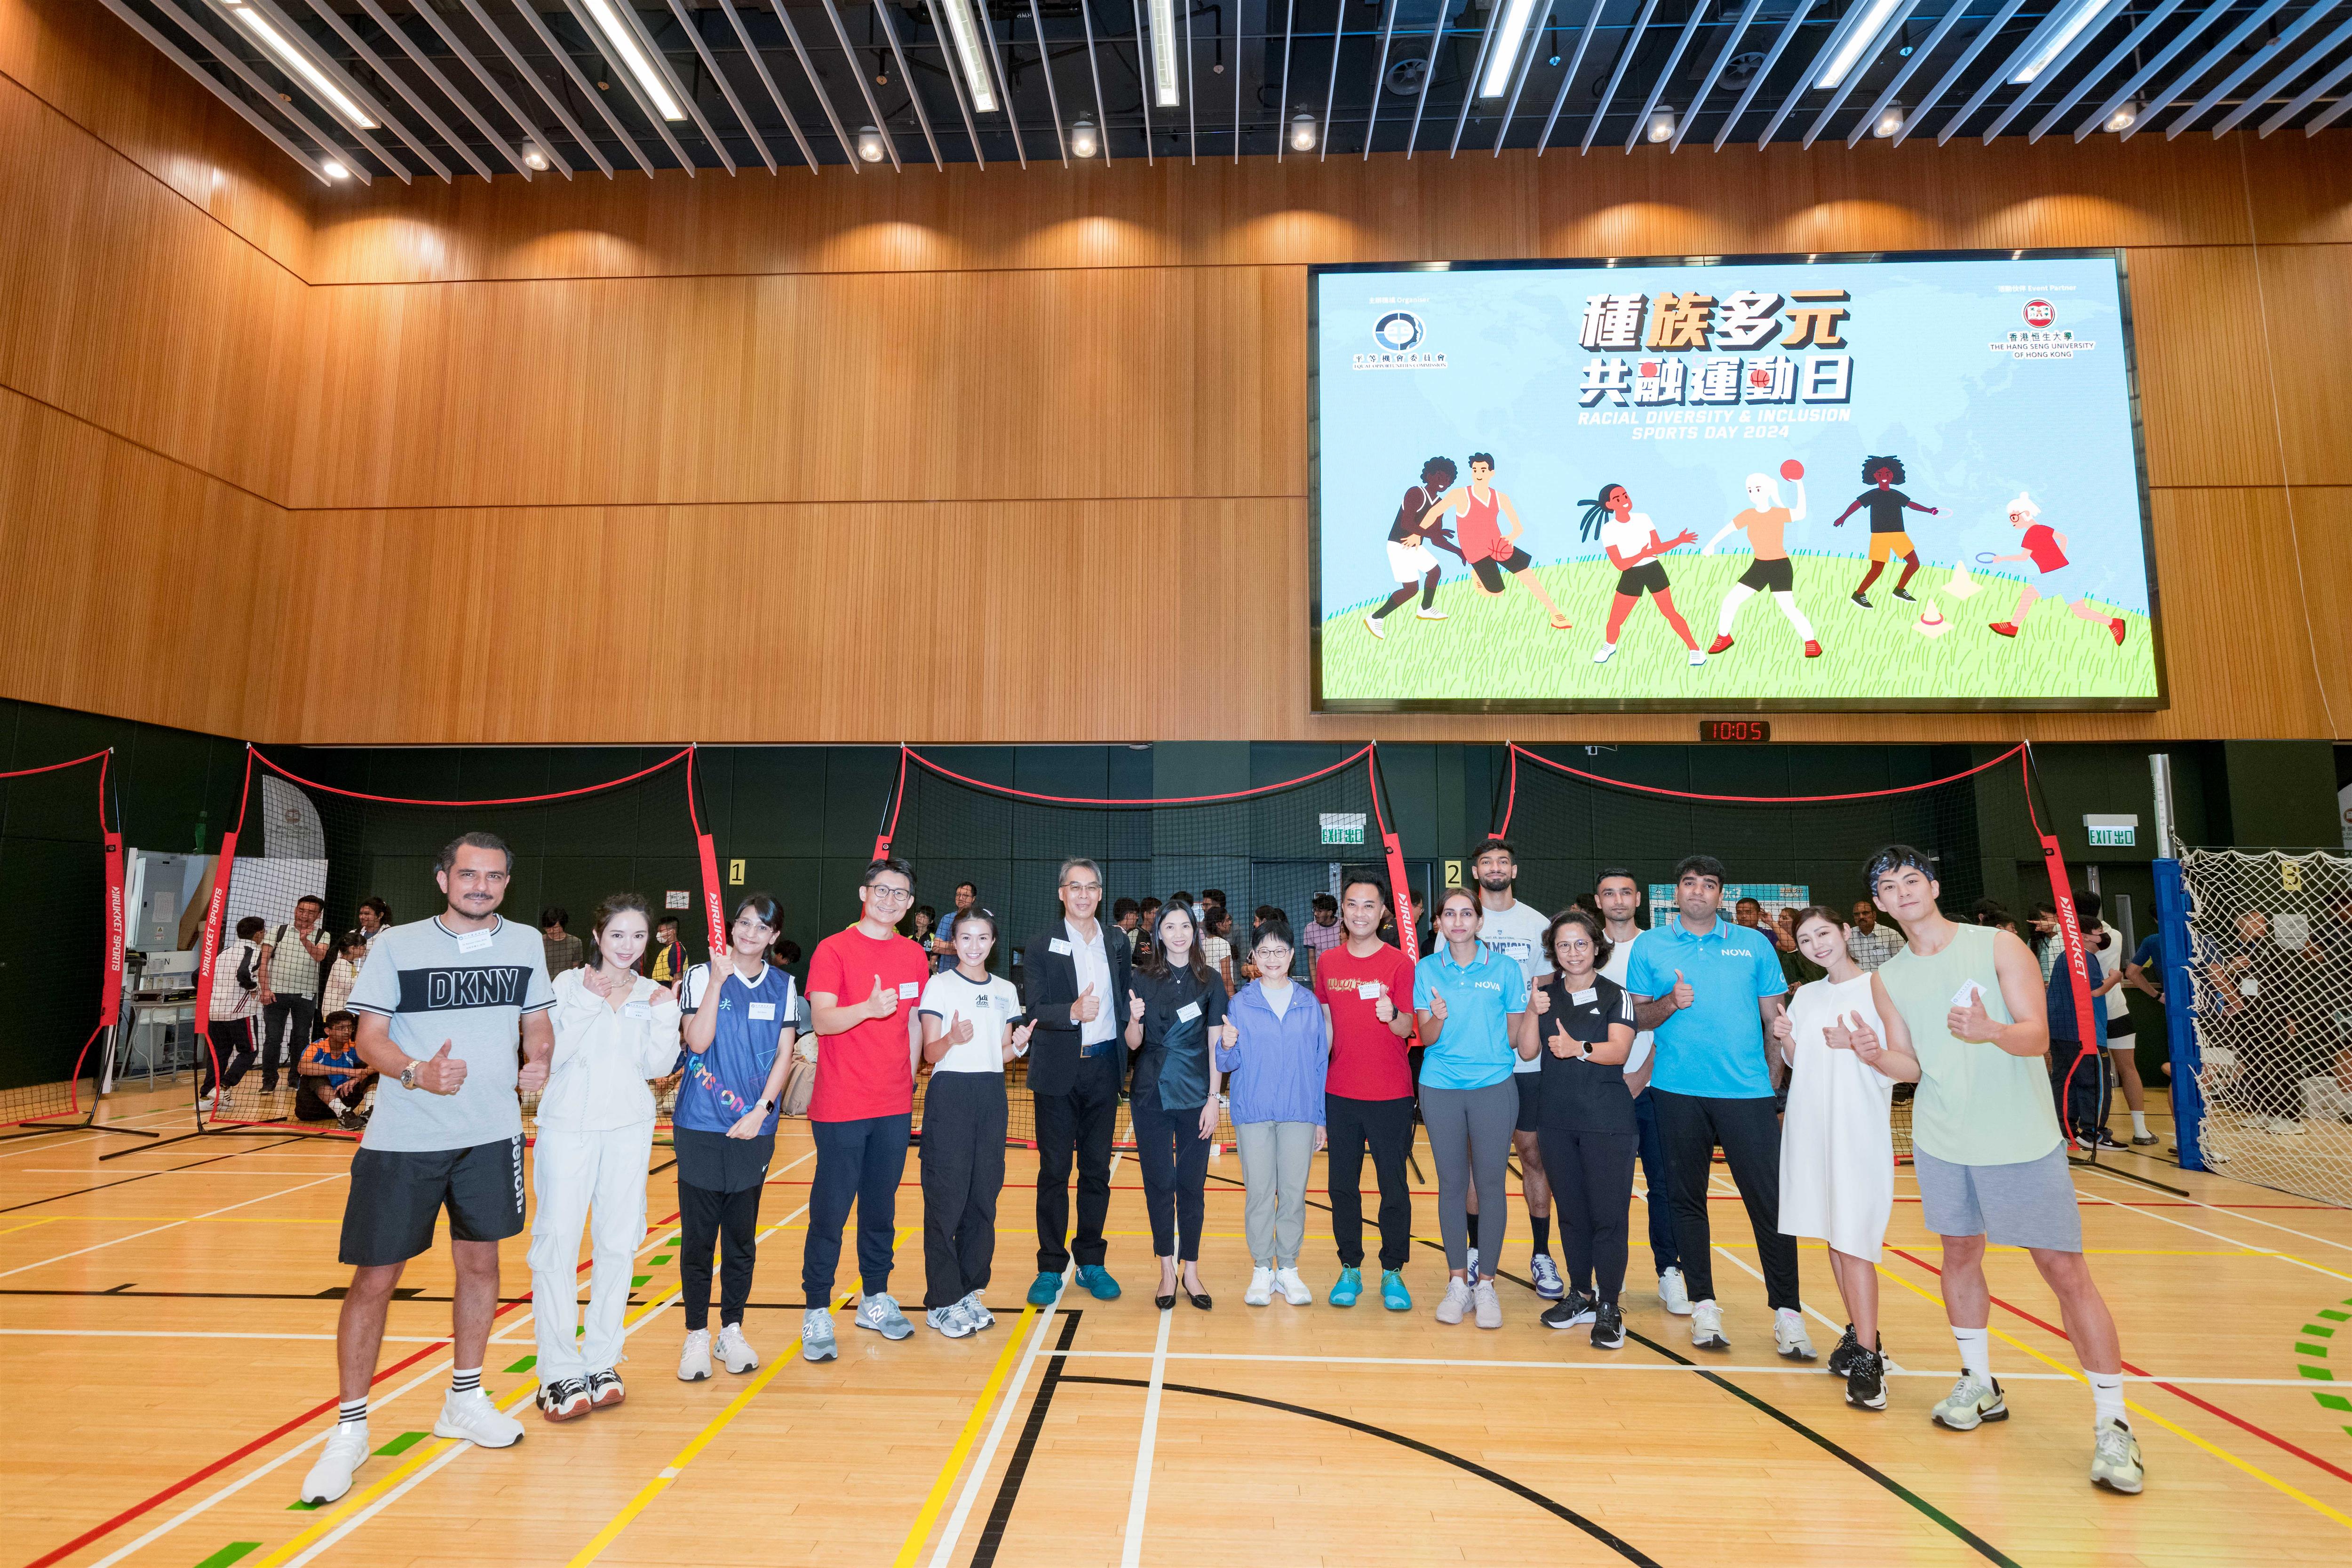 平機會主席林美秀女士, SBS,（左八）、香港恒生大學符可瑩副校長教授（教學與學生經驗） （左七）與一眾閃避球邀請賽嘉賓合照。